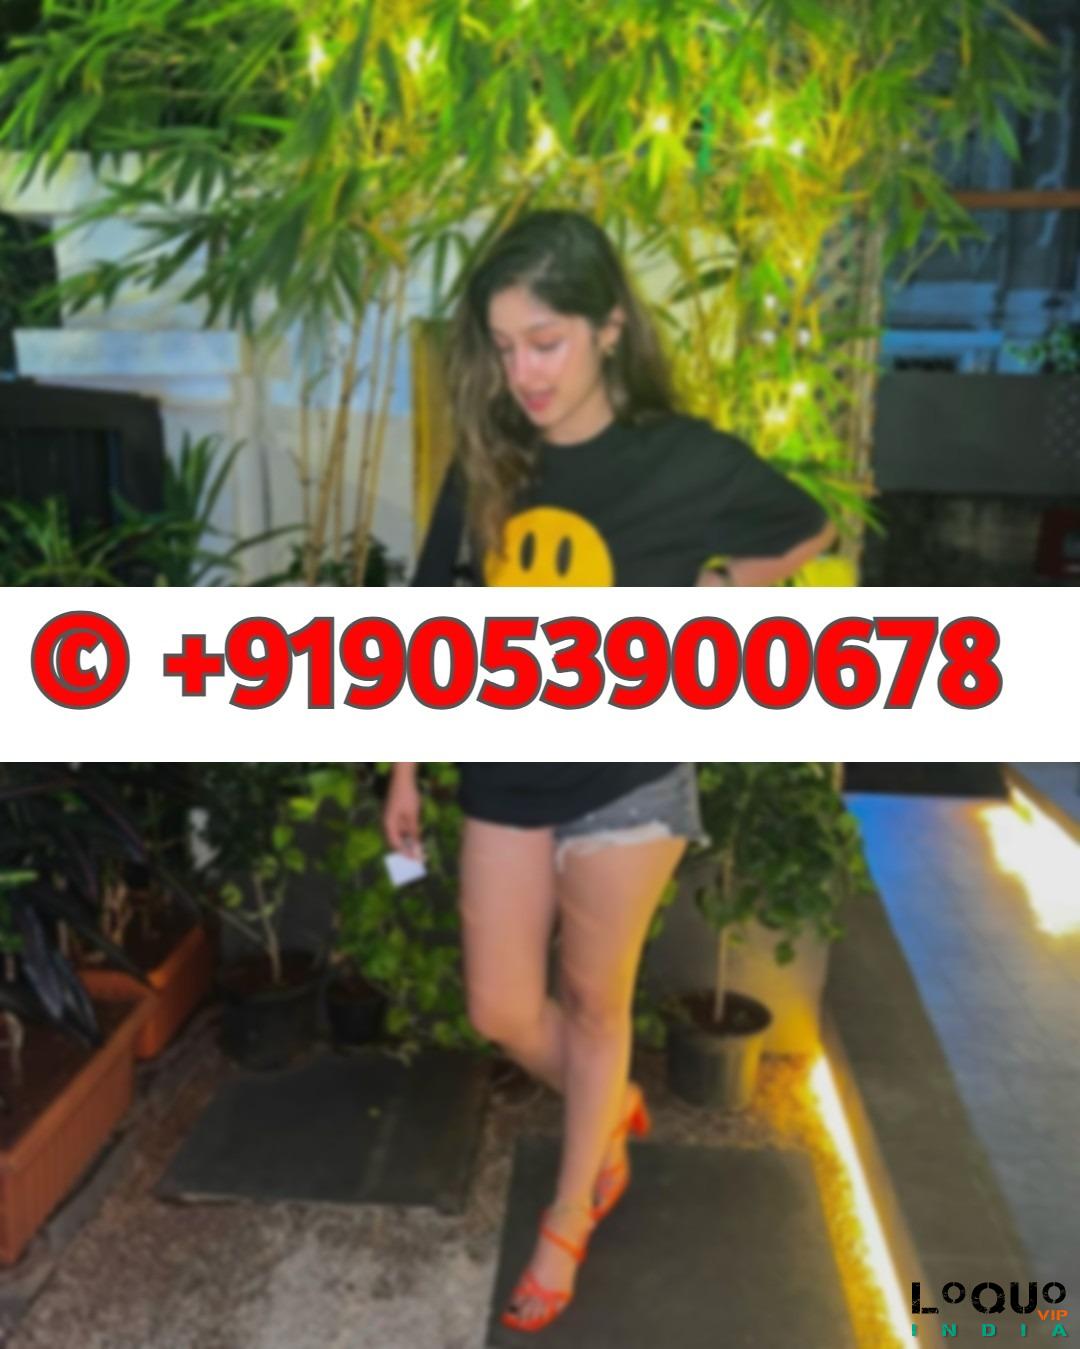 Call Girls Punjab: Low Sexy Call Girls In Punjab 9053900678 